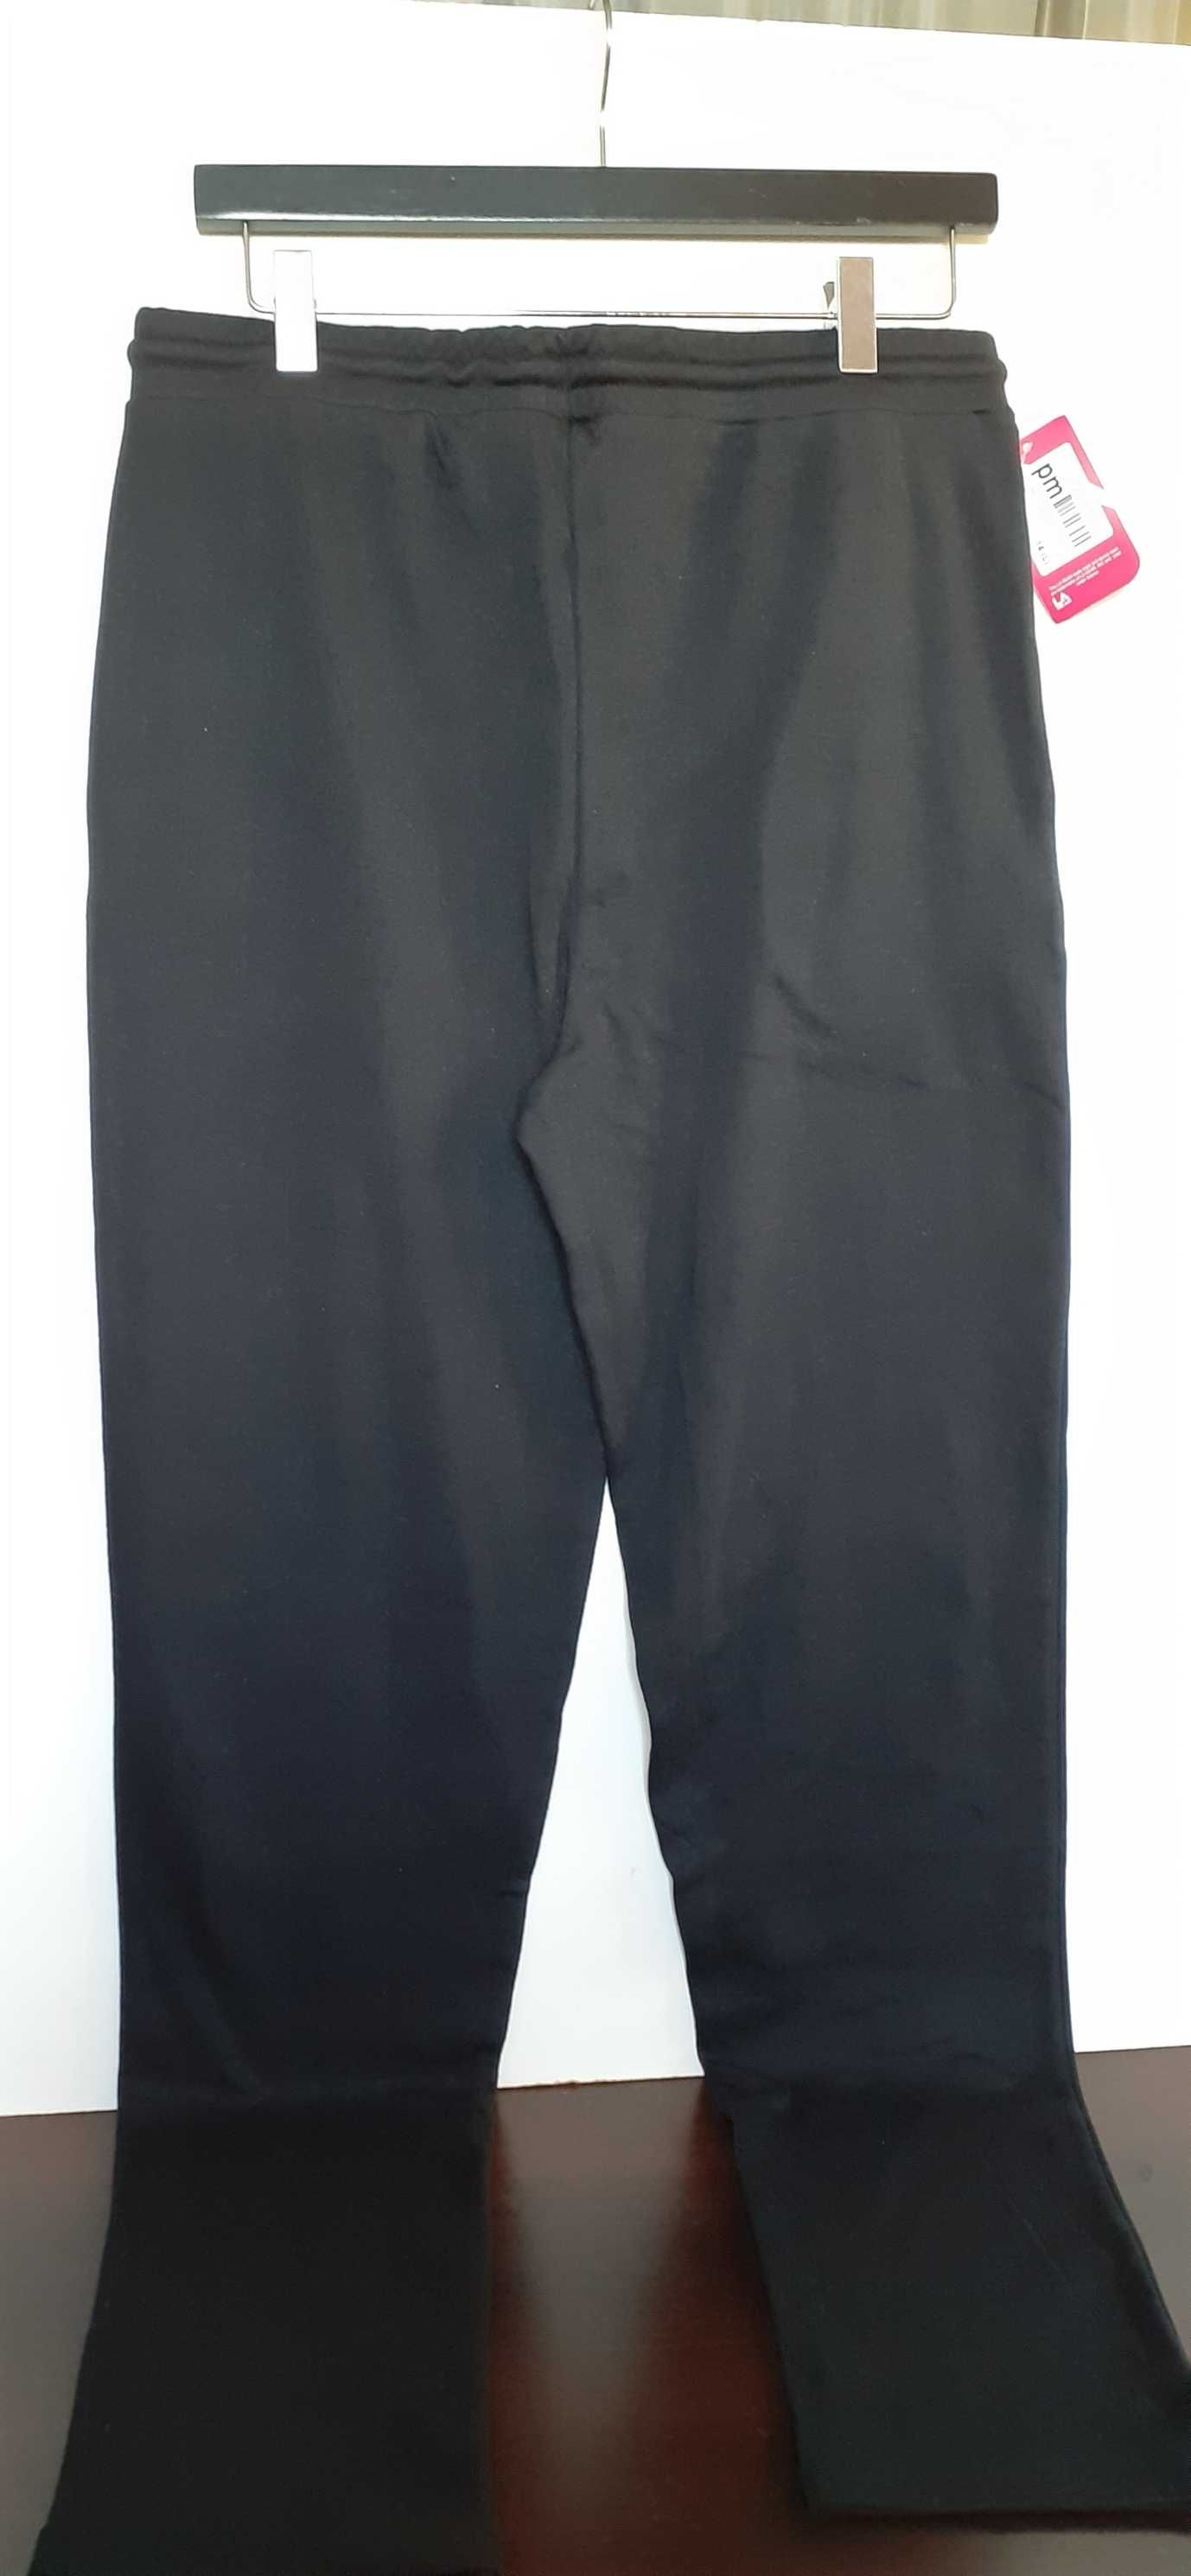 Новые женские спортивные штаны LA GEAR размер 14 (L) черные